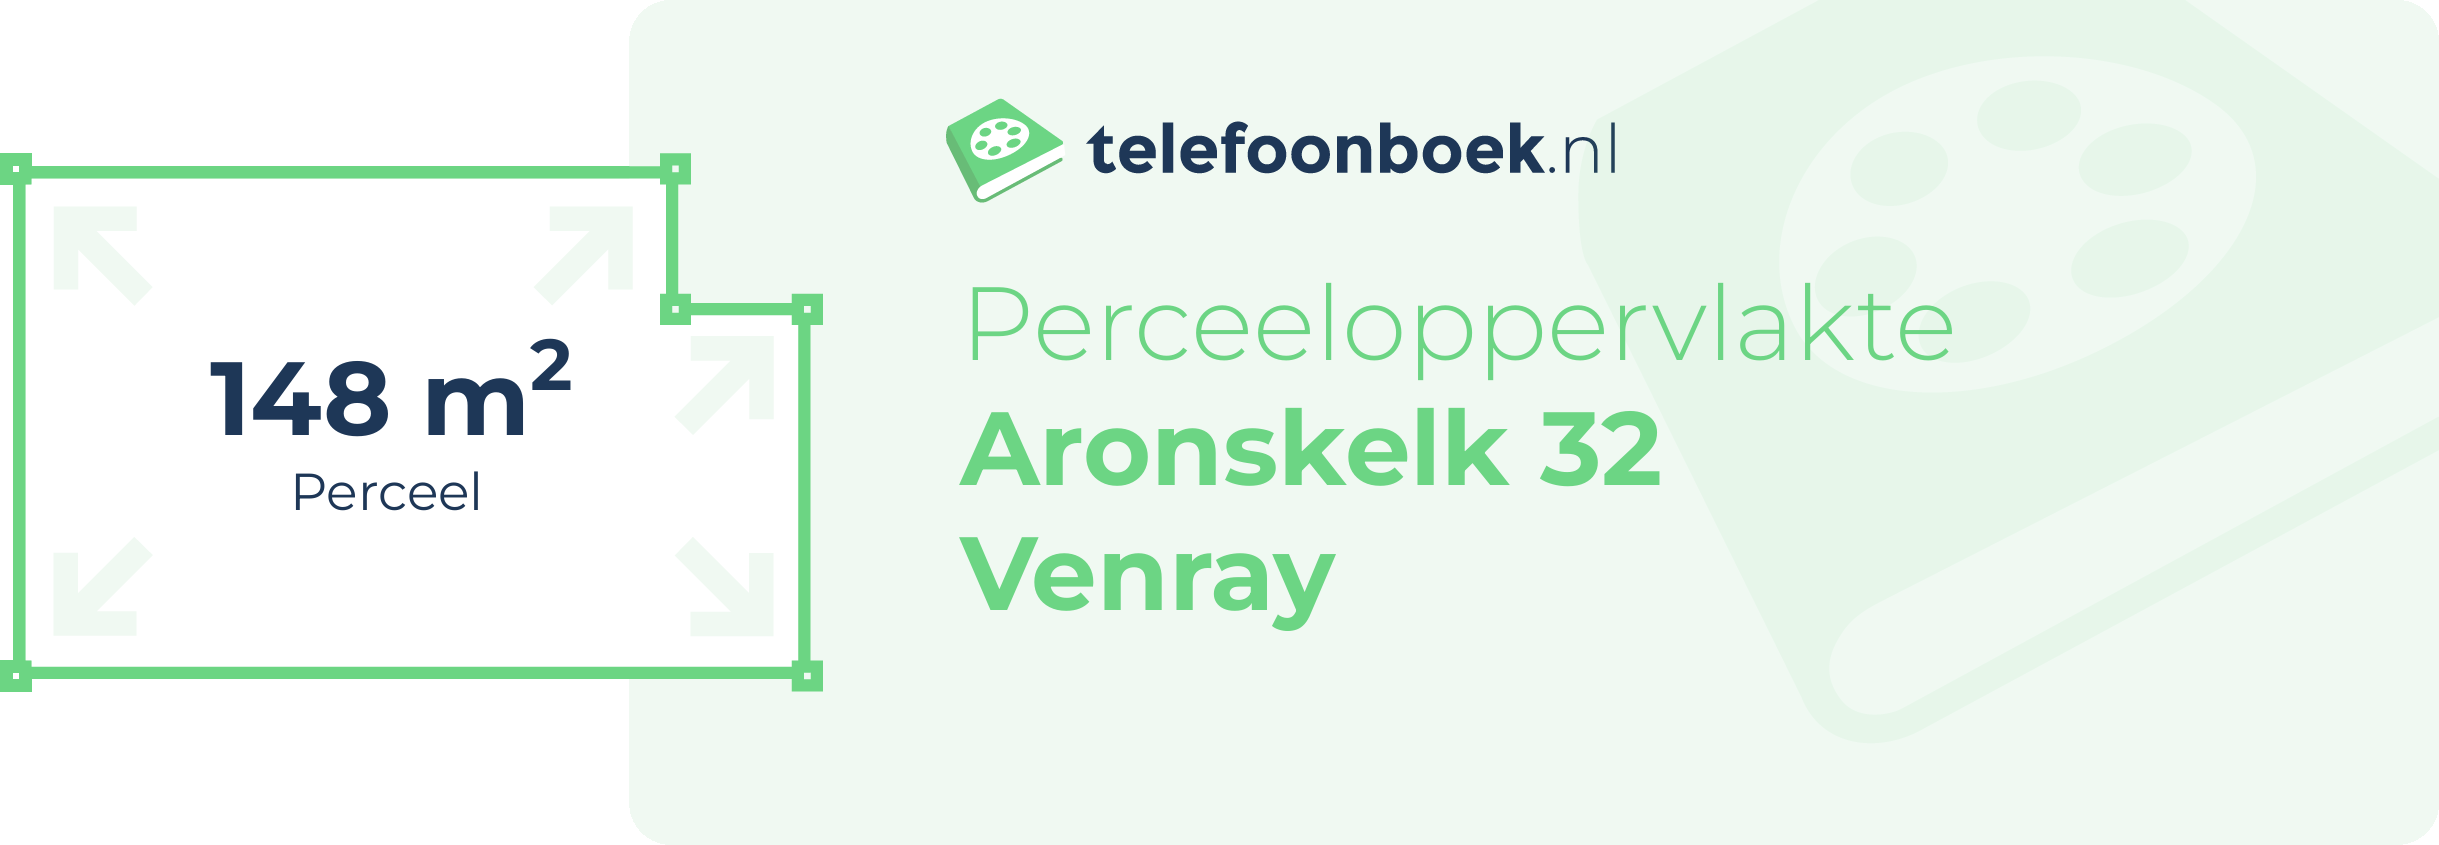 Perceeloppervlakte Aronskelk 32 Venray